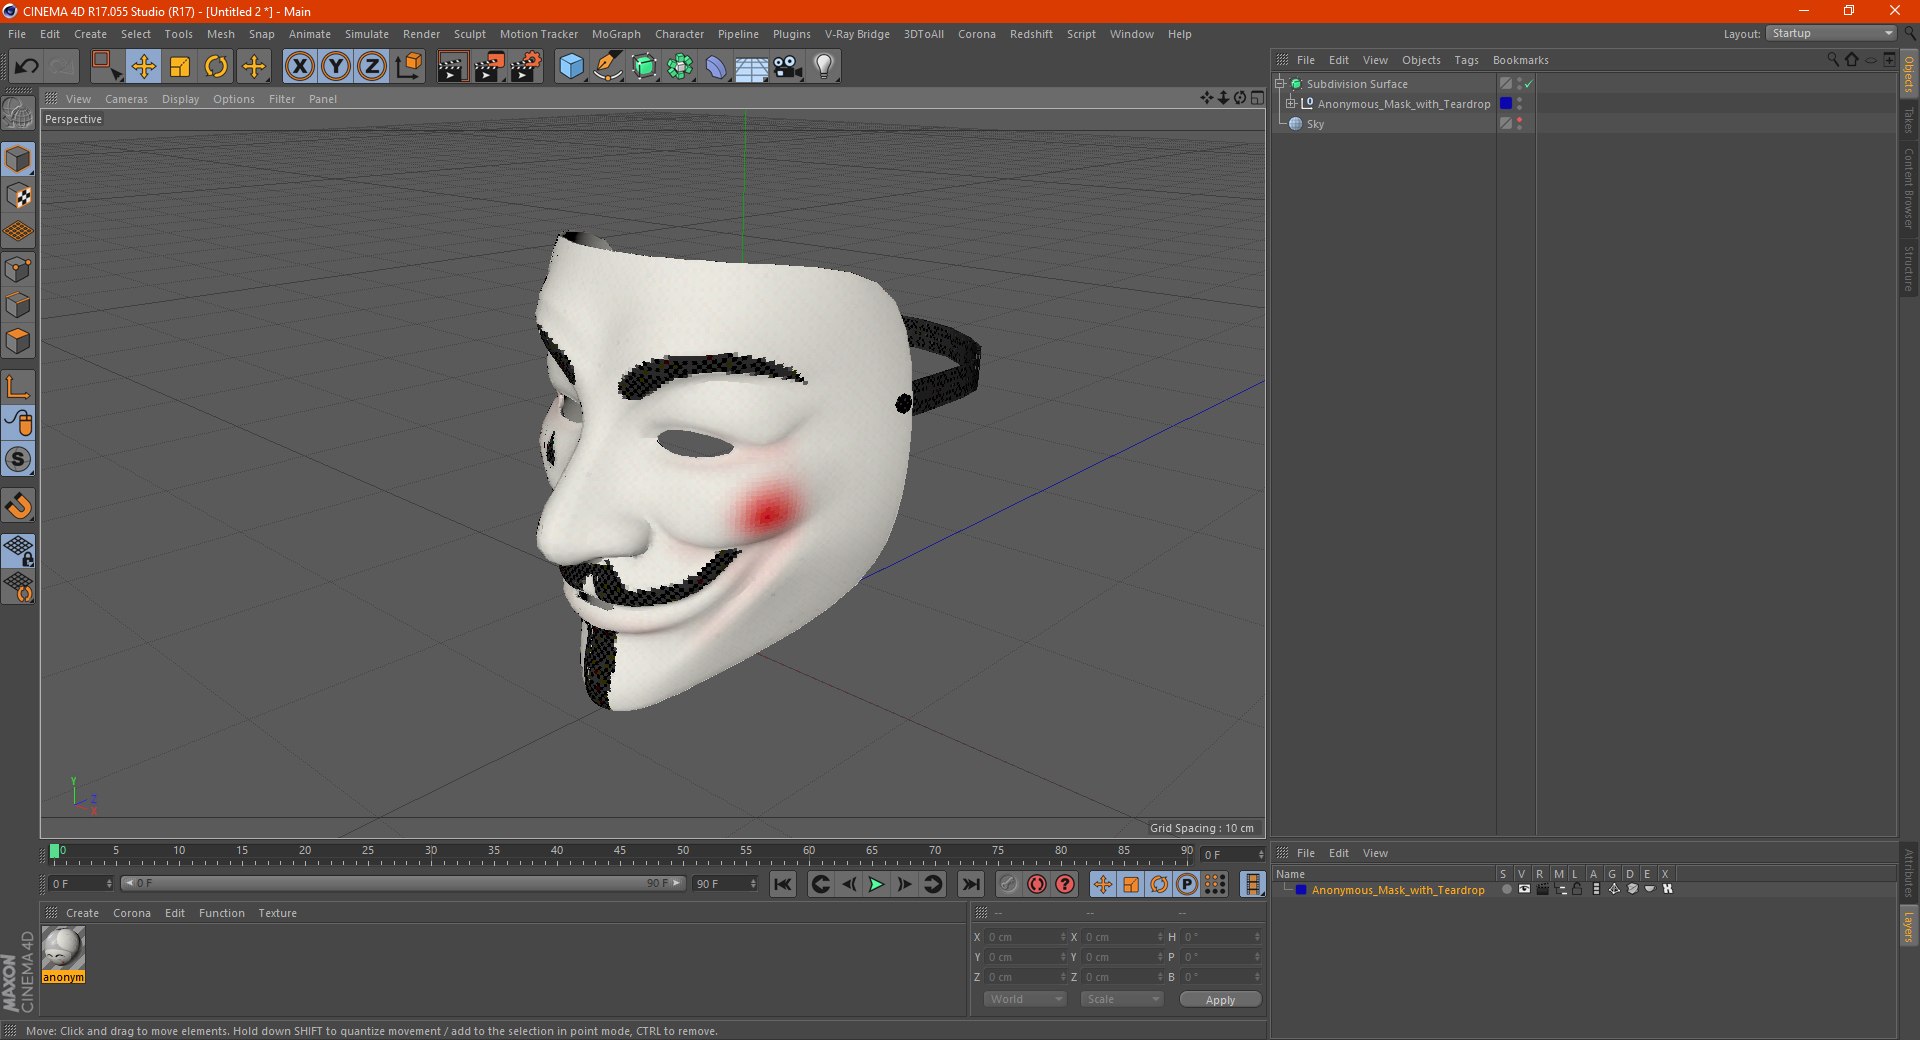 modèle 3D de Masque anonyme avec larme - TurboSquid 1771346